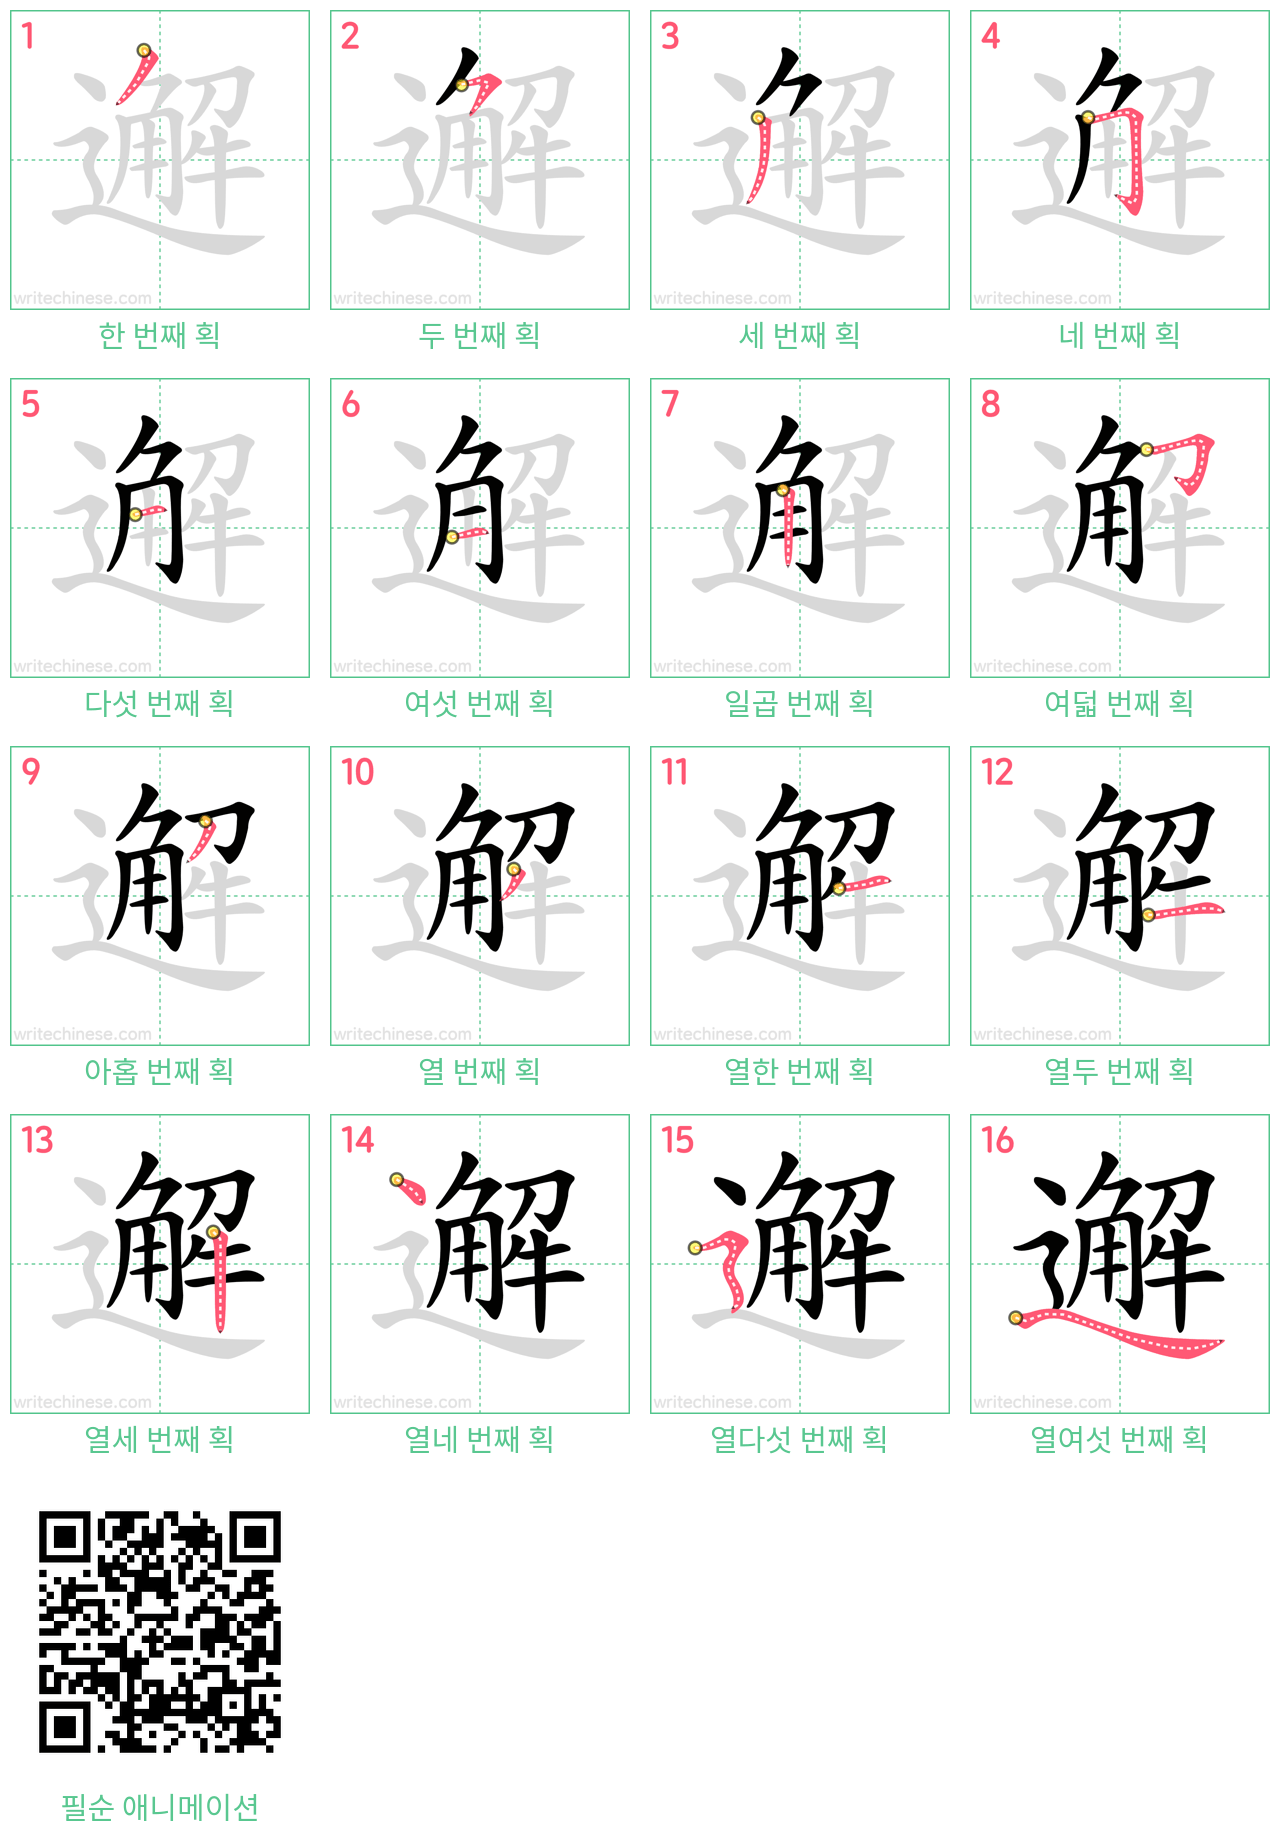 邂 step-by-step stroke order diagrams